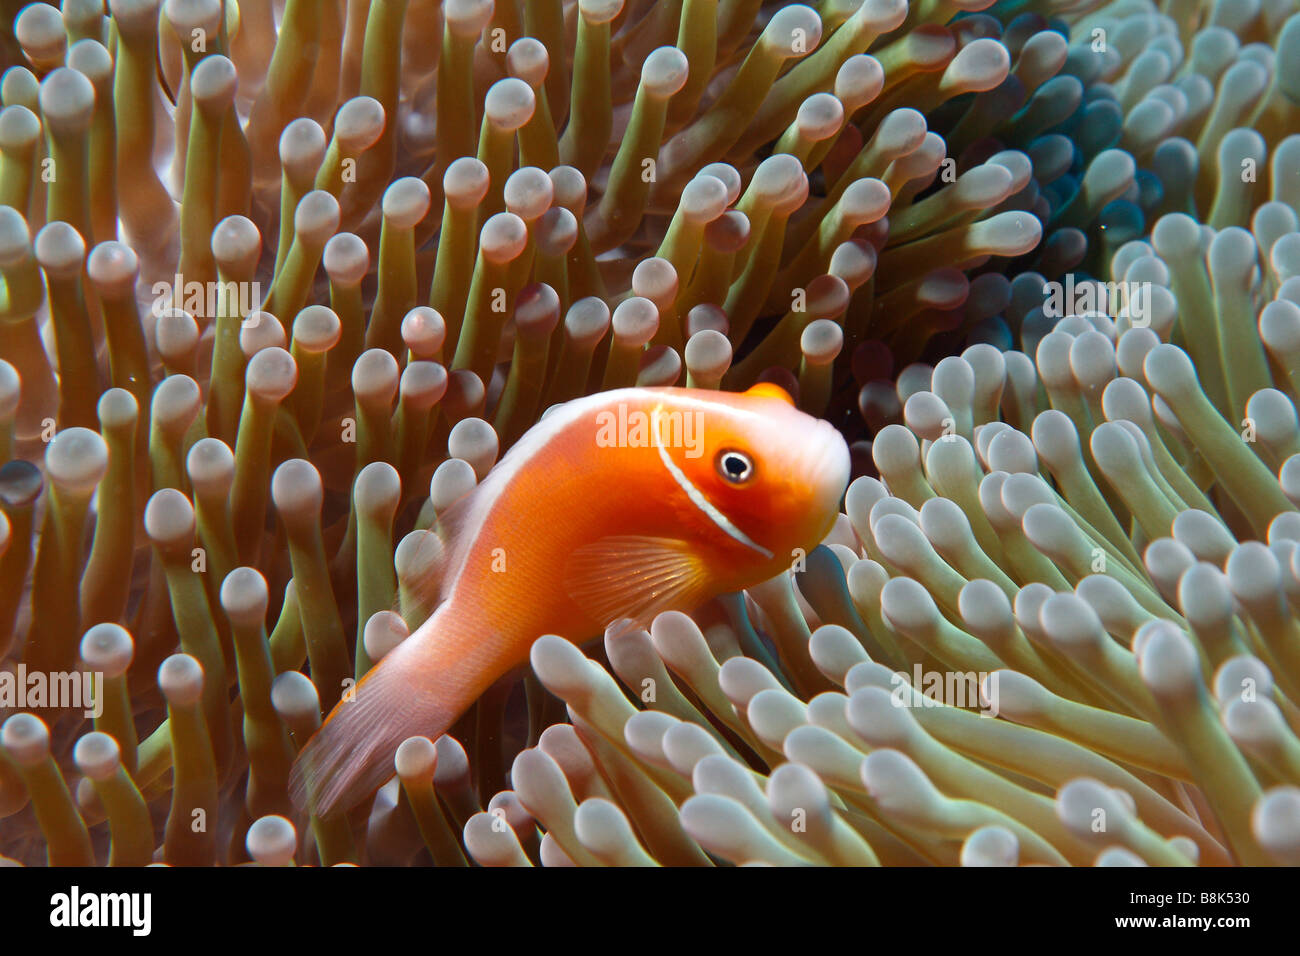 Rosa Anemonenfische im Anemone Tentakeln schwimmen Stockfoto